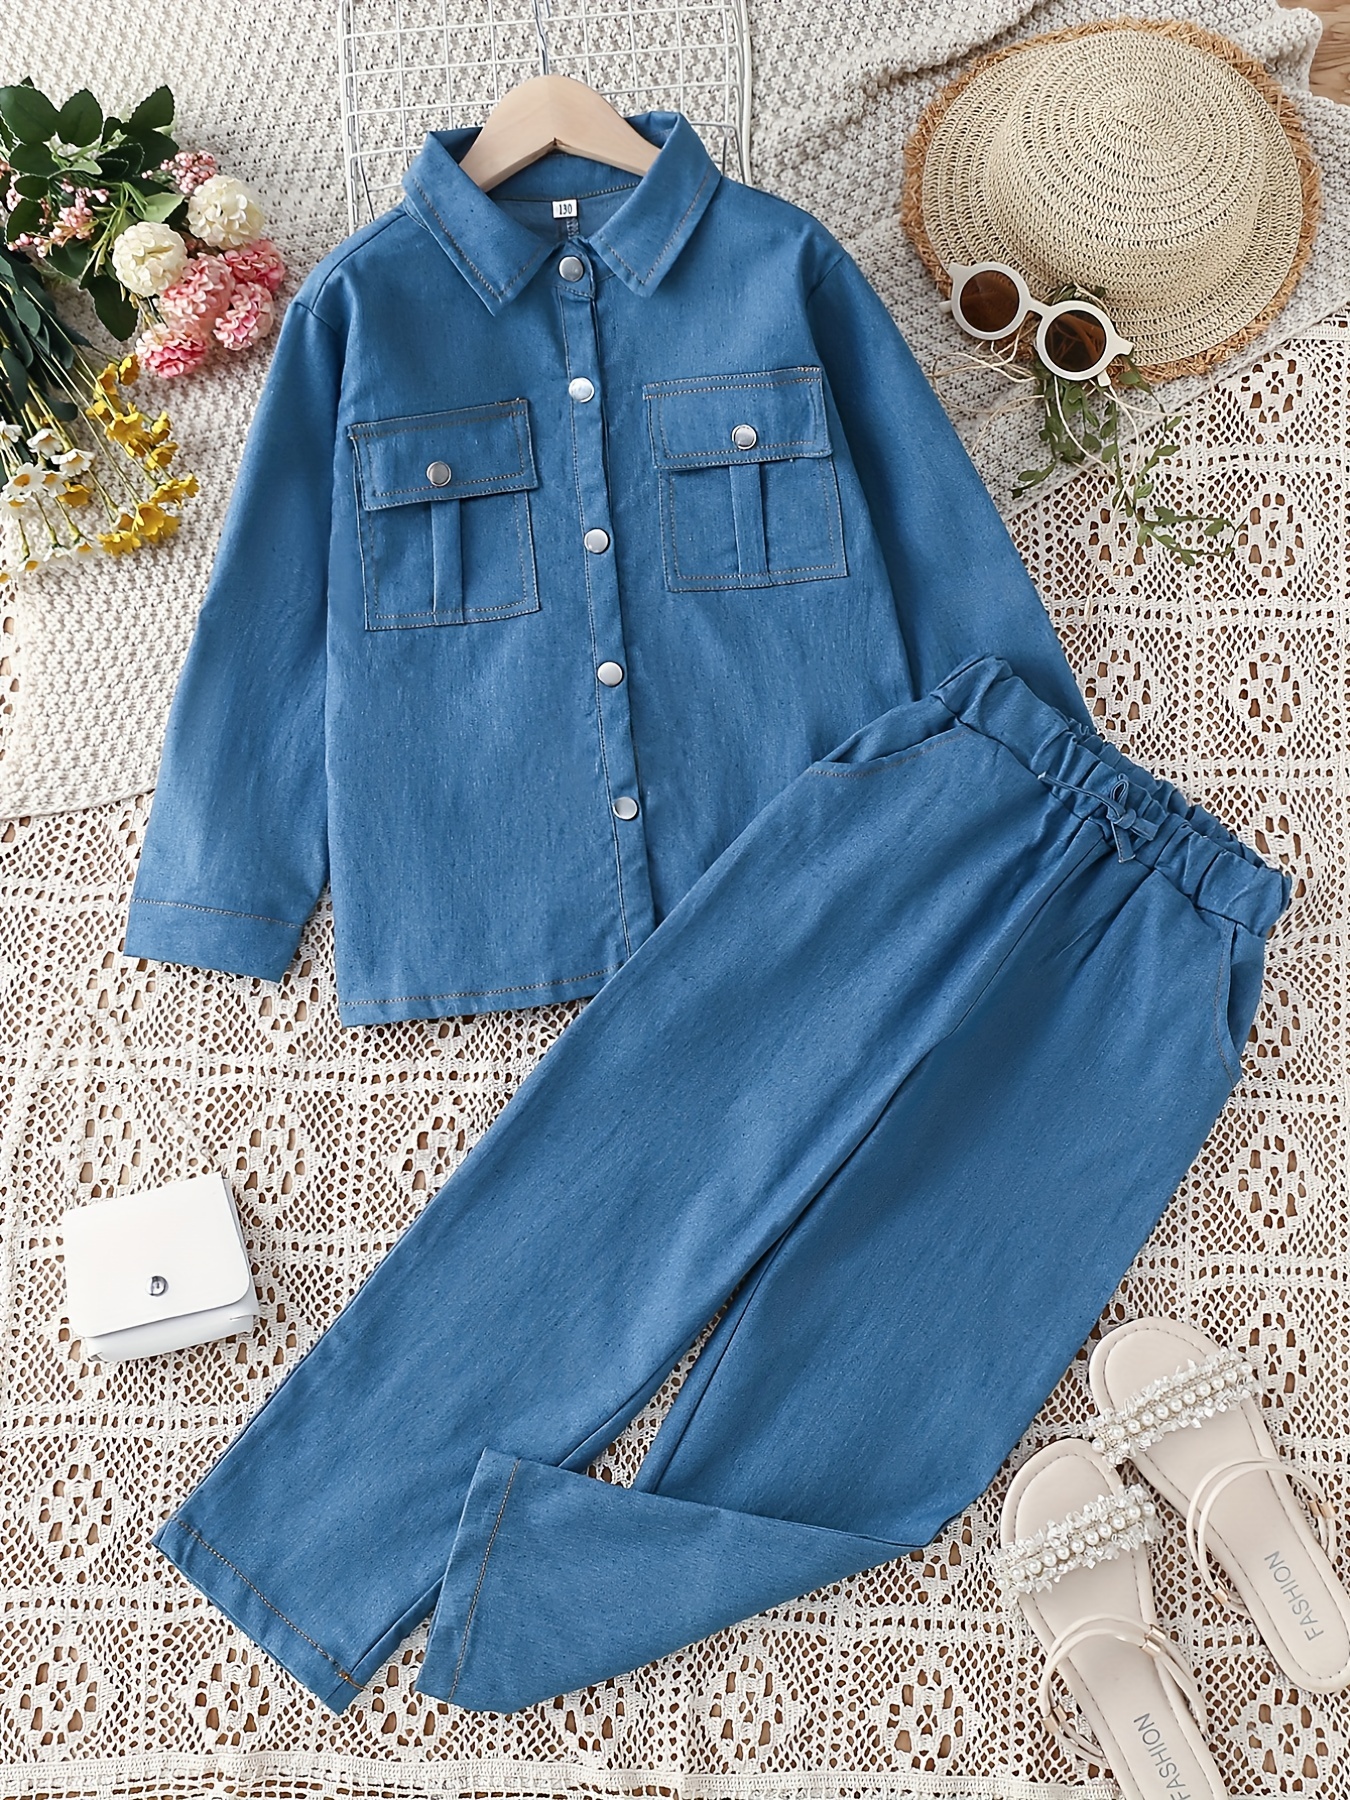 2pcs Girls' Casual Denim Suit Long Sleeve Denim Shirt And Elastic Waist  Jeans Set Fashion Suit Outfit